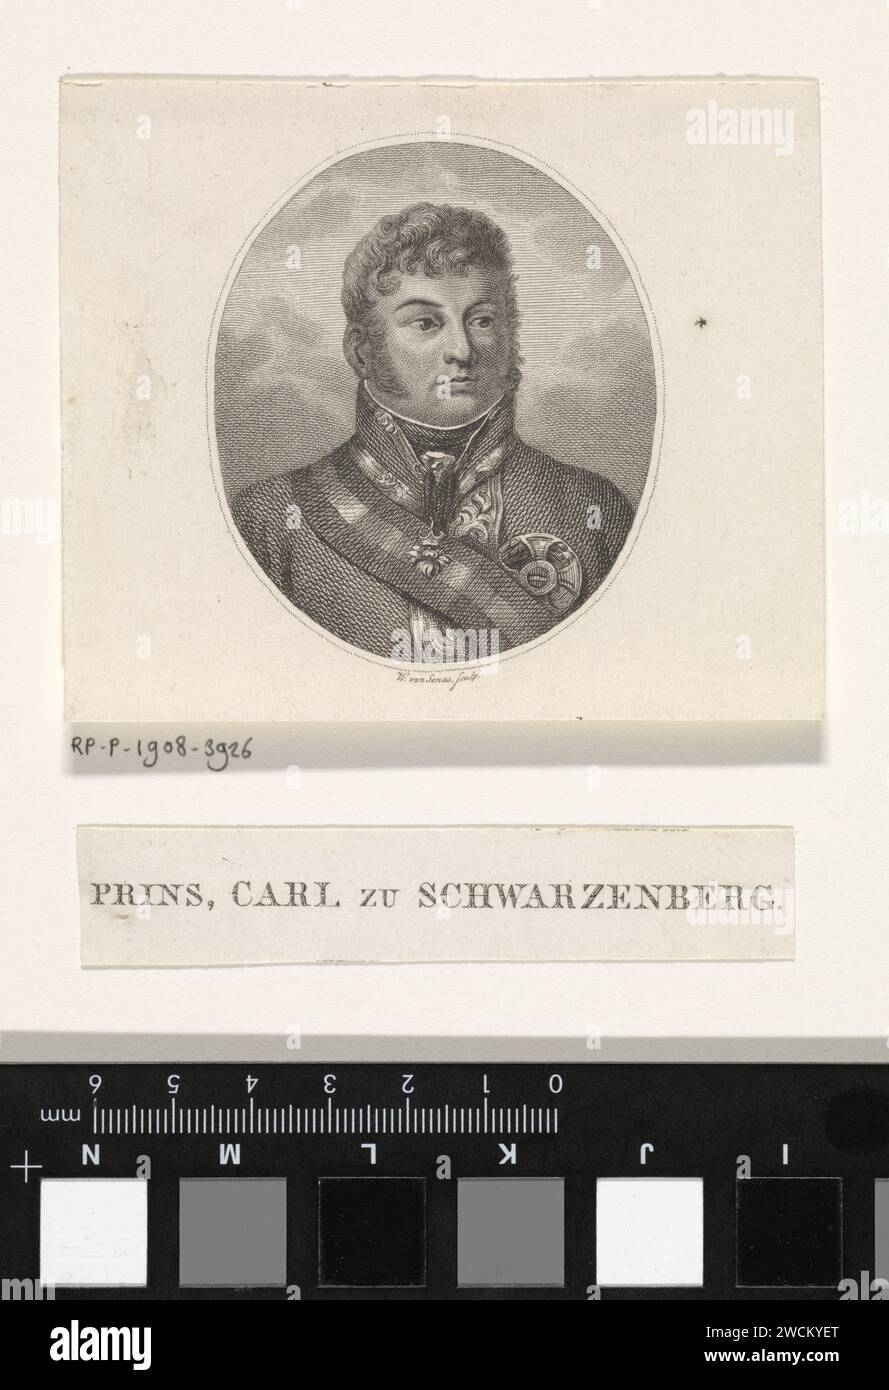 Retrato de Carl Philipp von Schwarzenberg, Willem van Senus, 1783 - 1851 imprimir Retrato del mariscal de campo austriaco Karl Philip zu Schwarzenberg. Países Bajos papel grabado / grabado Foto de stock